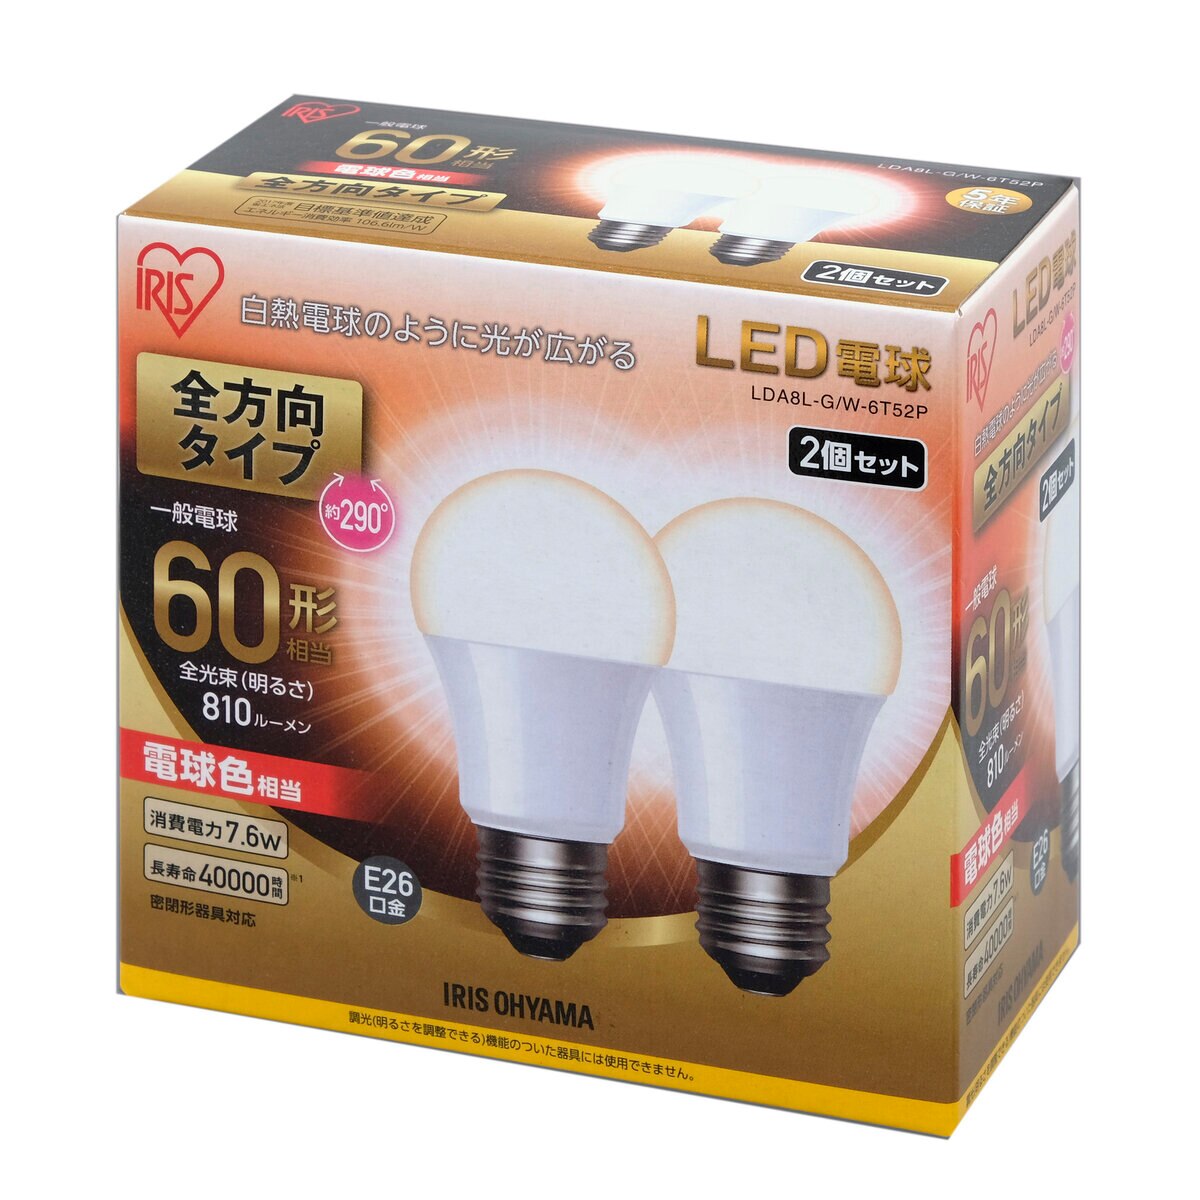 アイリスオーヤマ LED電球 全方向 E26 60型相当 2個セット | Costco Japan